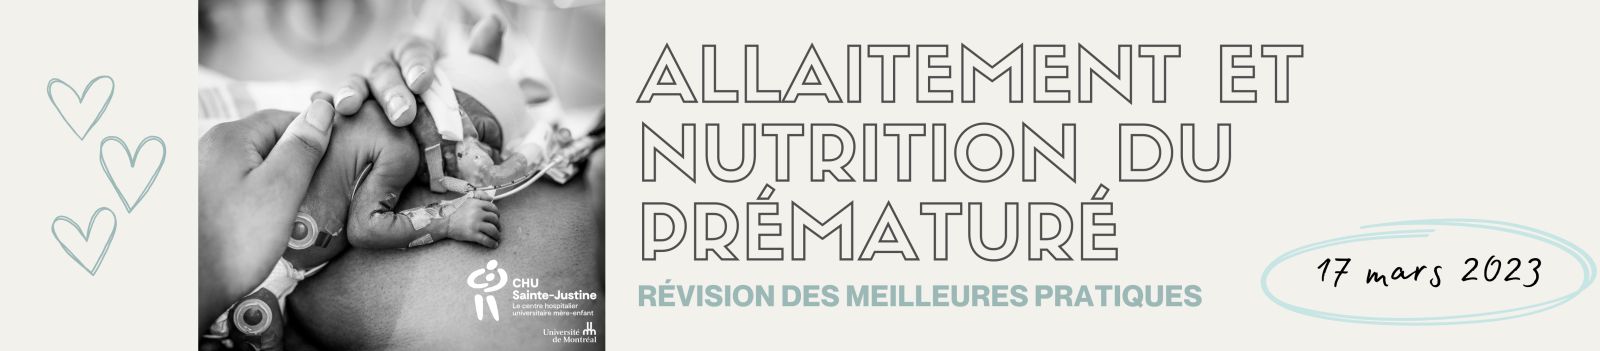 Allaitement_et_nutrition_2023.png